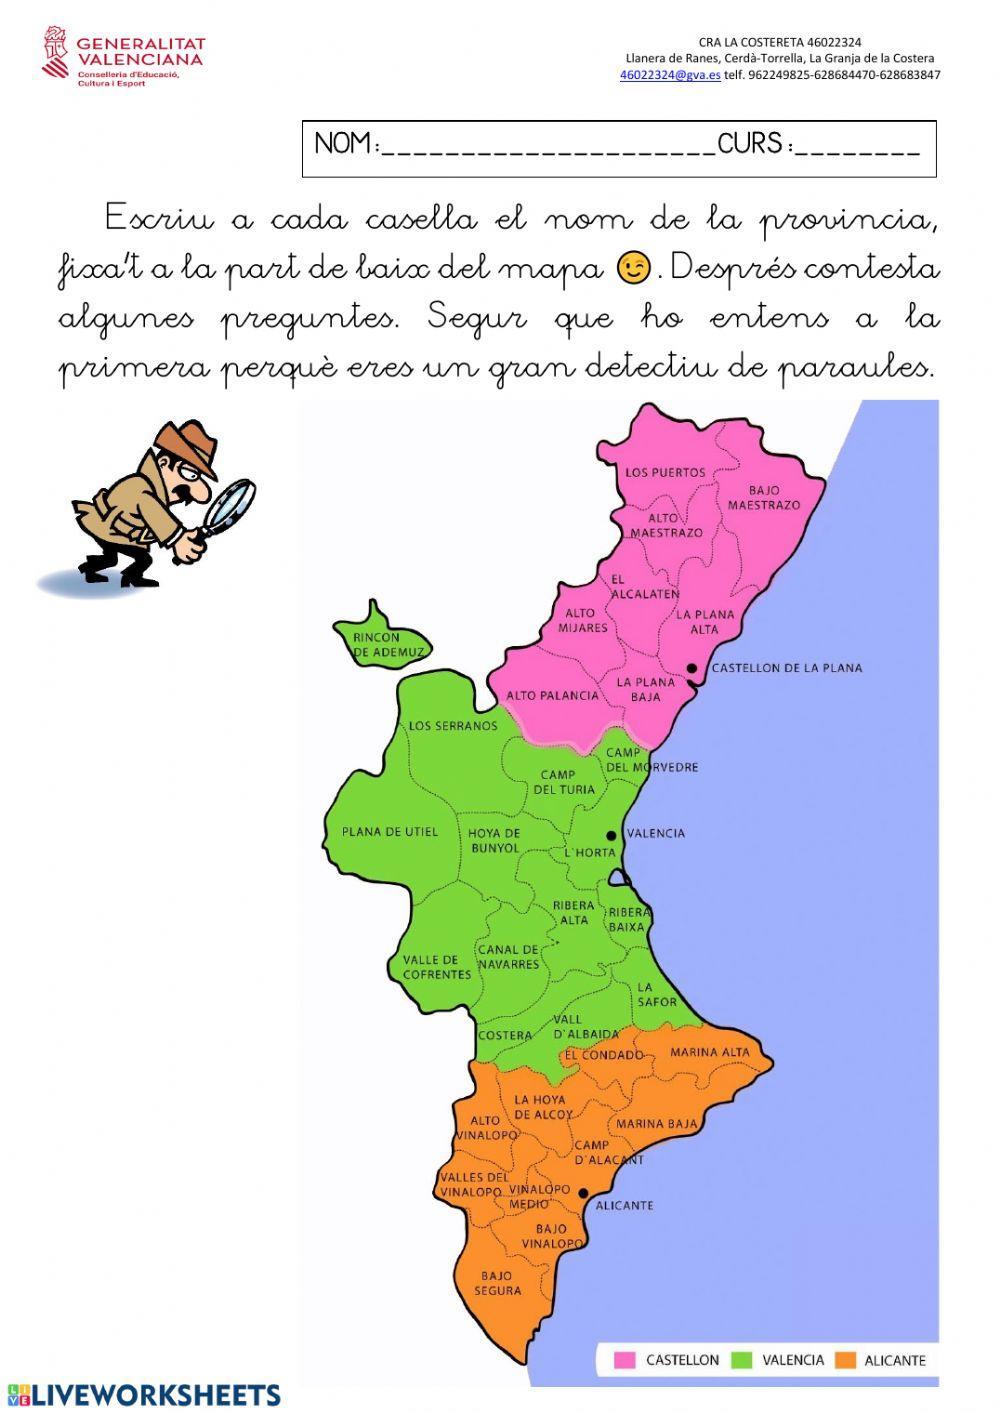 Provincies de la Comunitat Valenciana